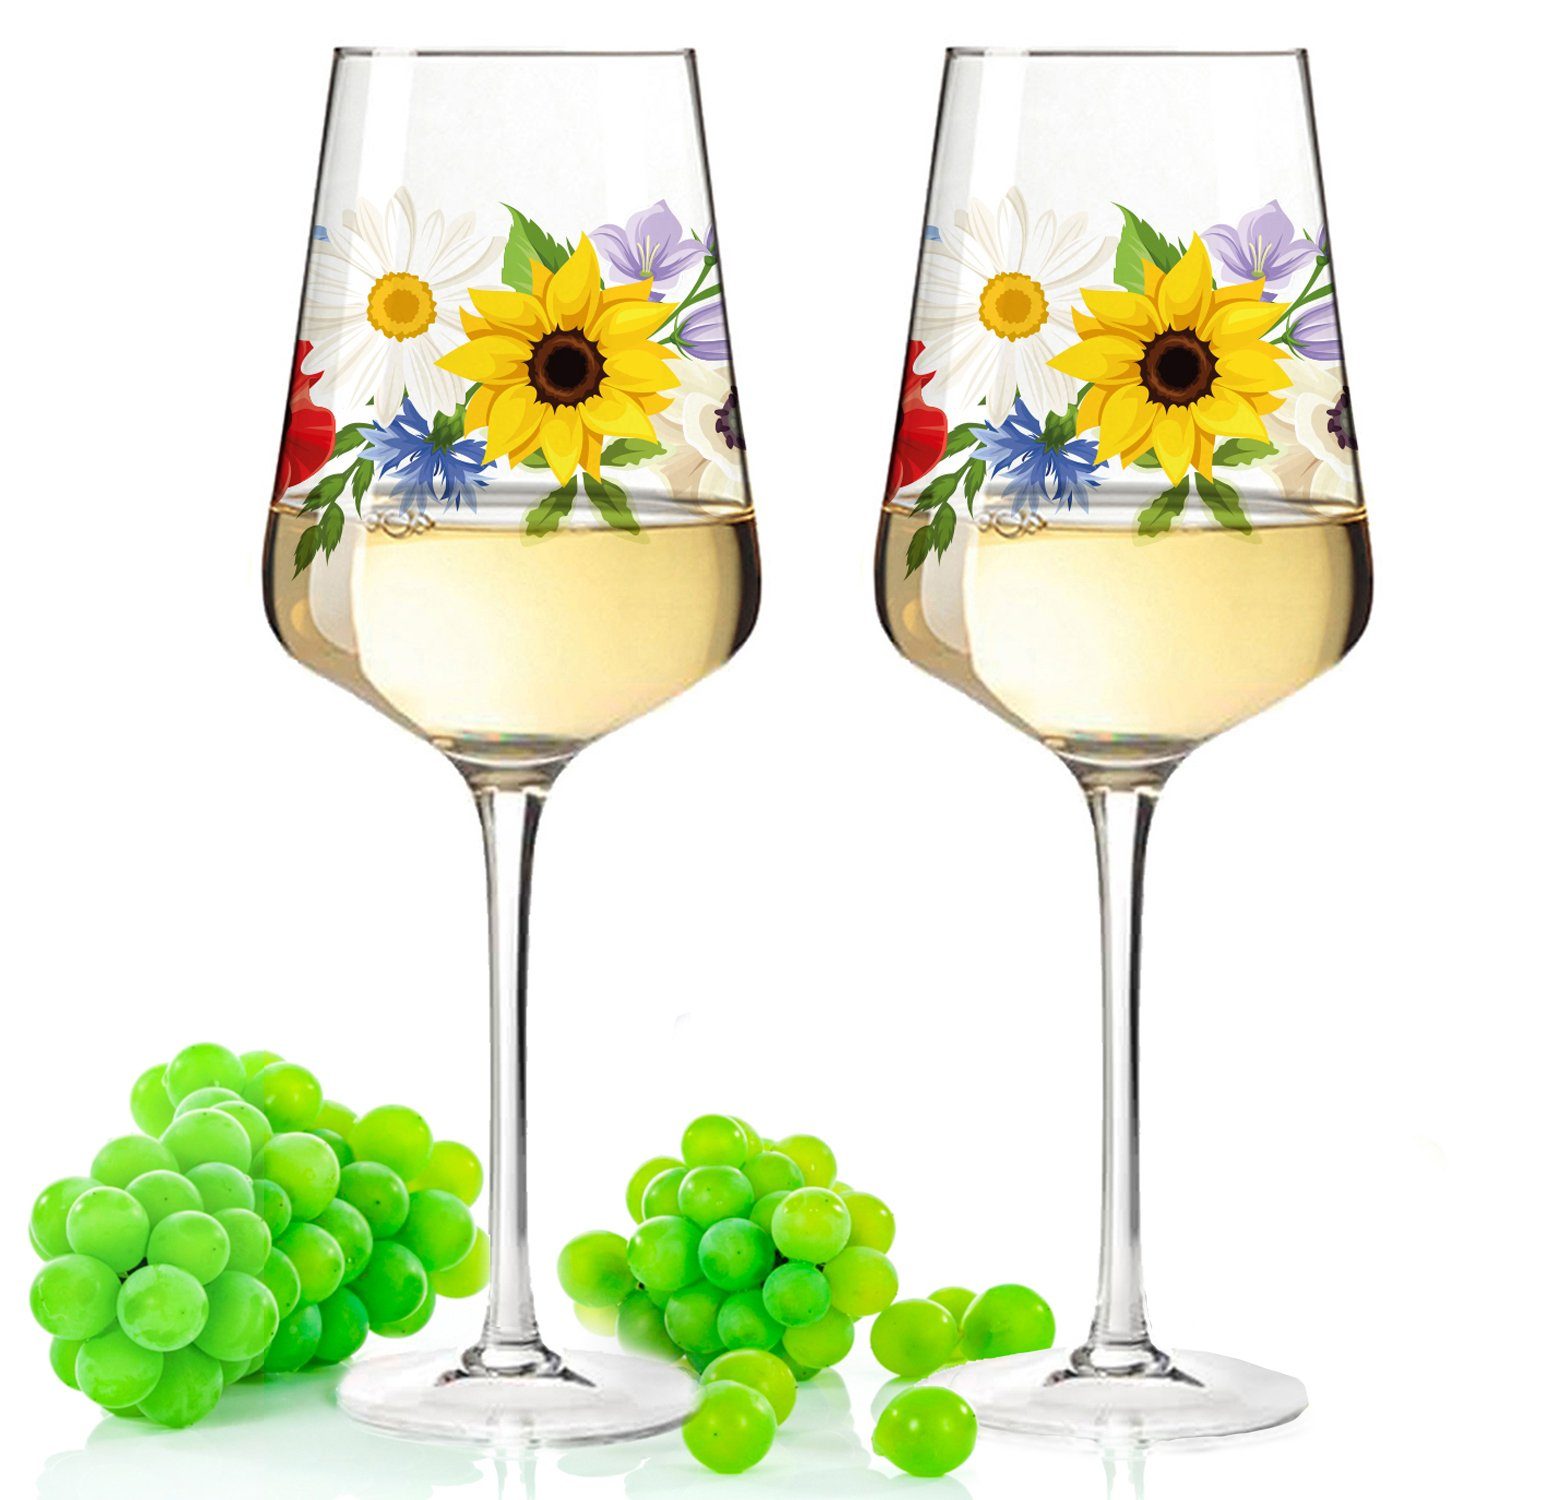 GRAVURZEILE Rotweinglas Leonardo Puccini Weinglas mit UV-Druck - Blumenbouquet Design, Glas, Sommerliche Weingläser mit Blumen für Aperol, Weißwein und Rotwein